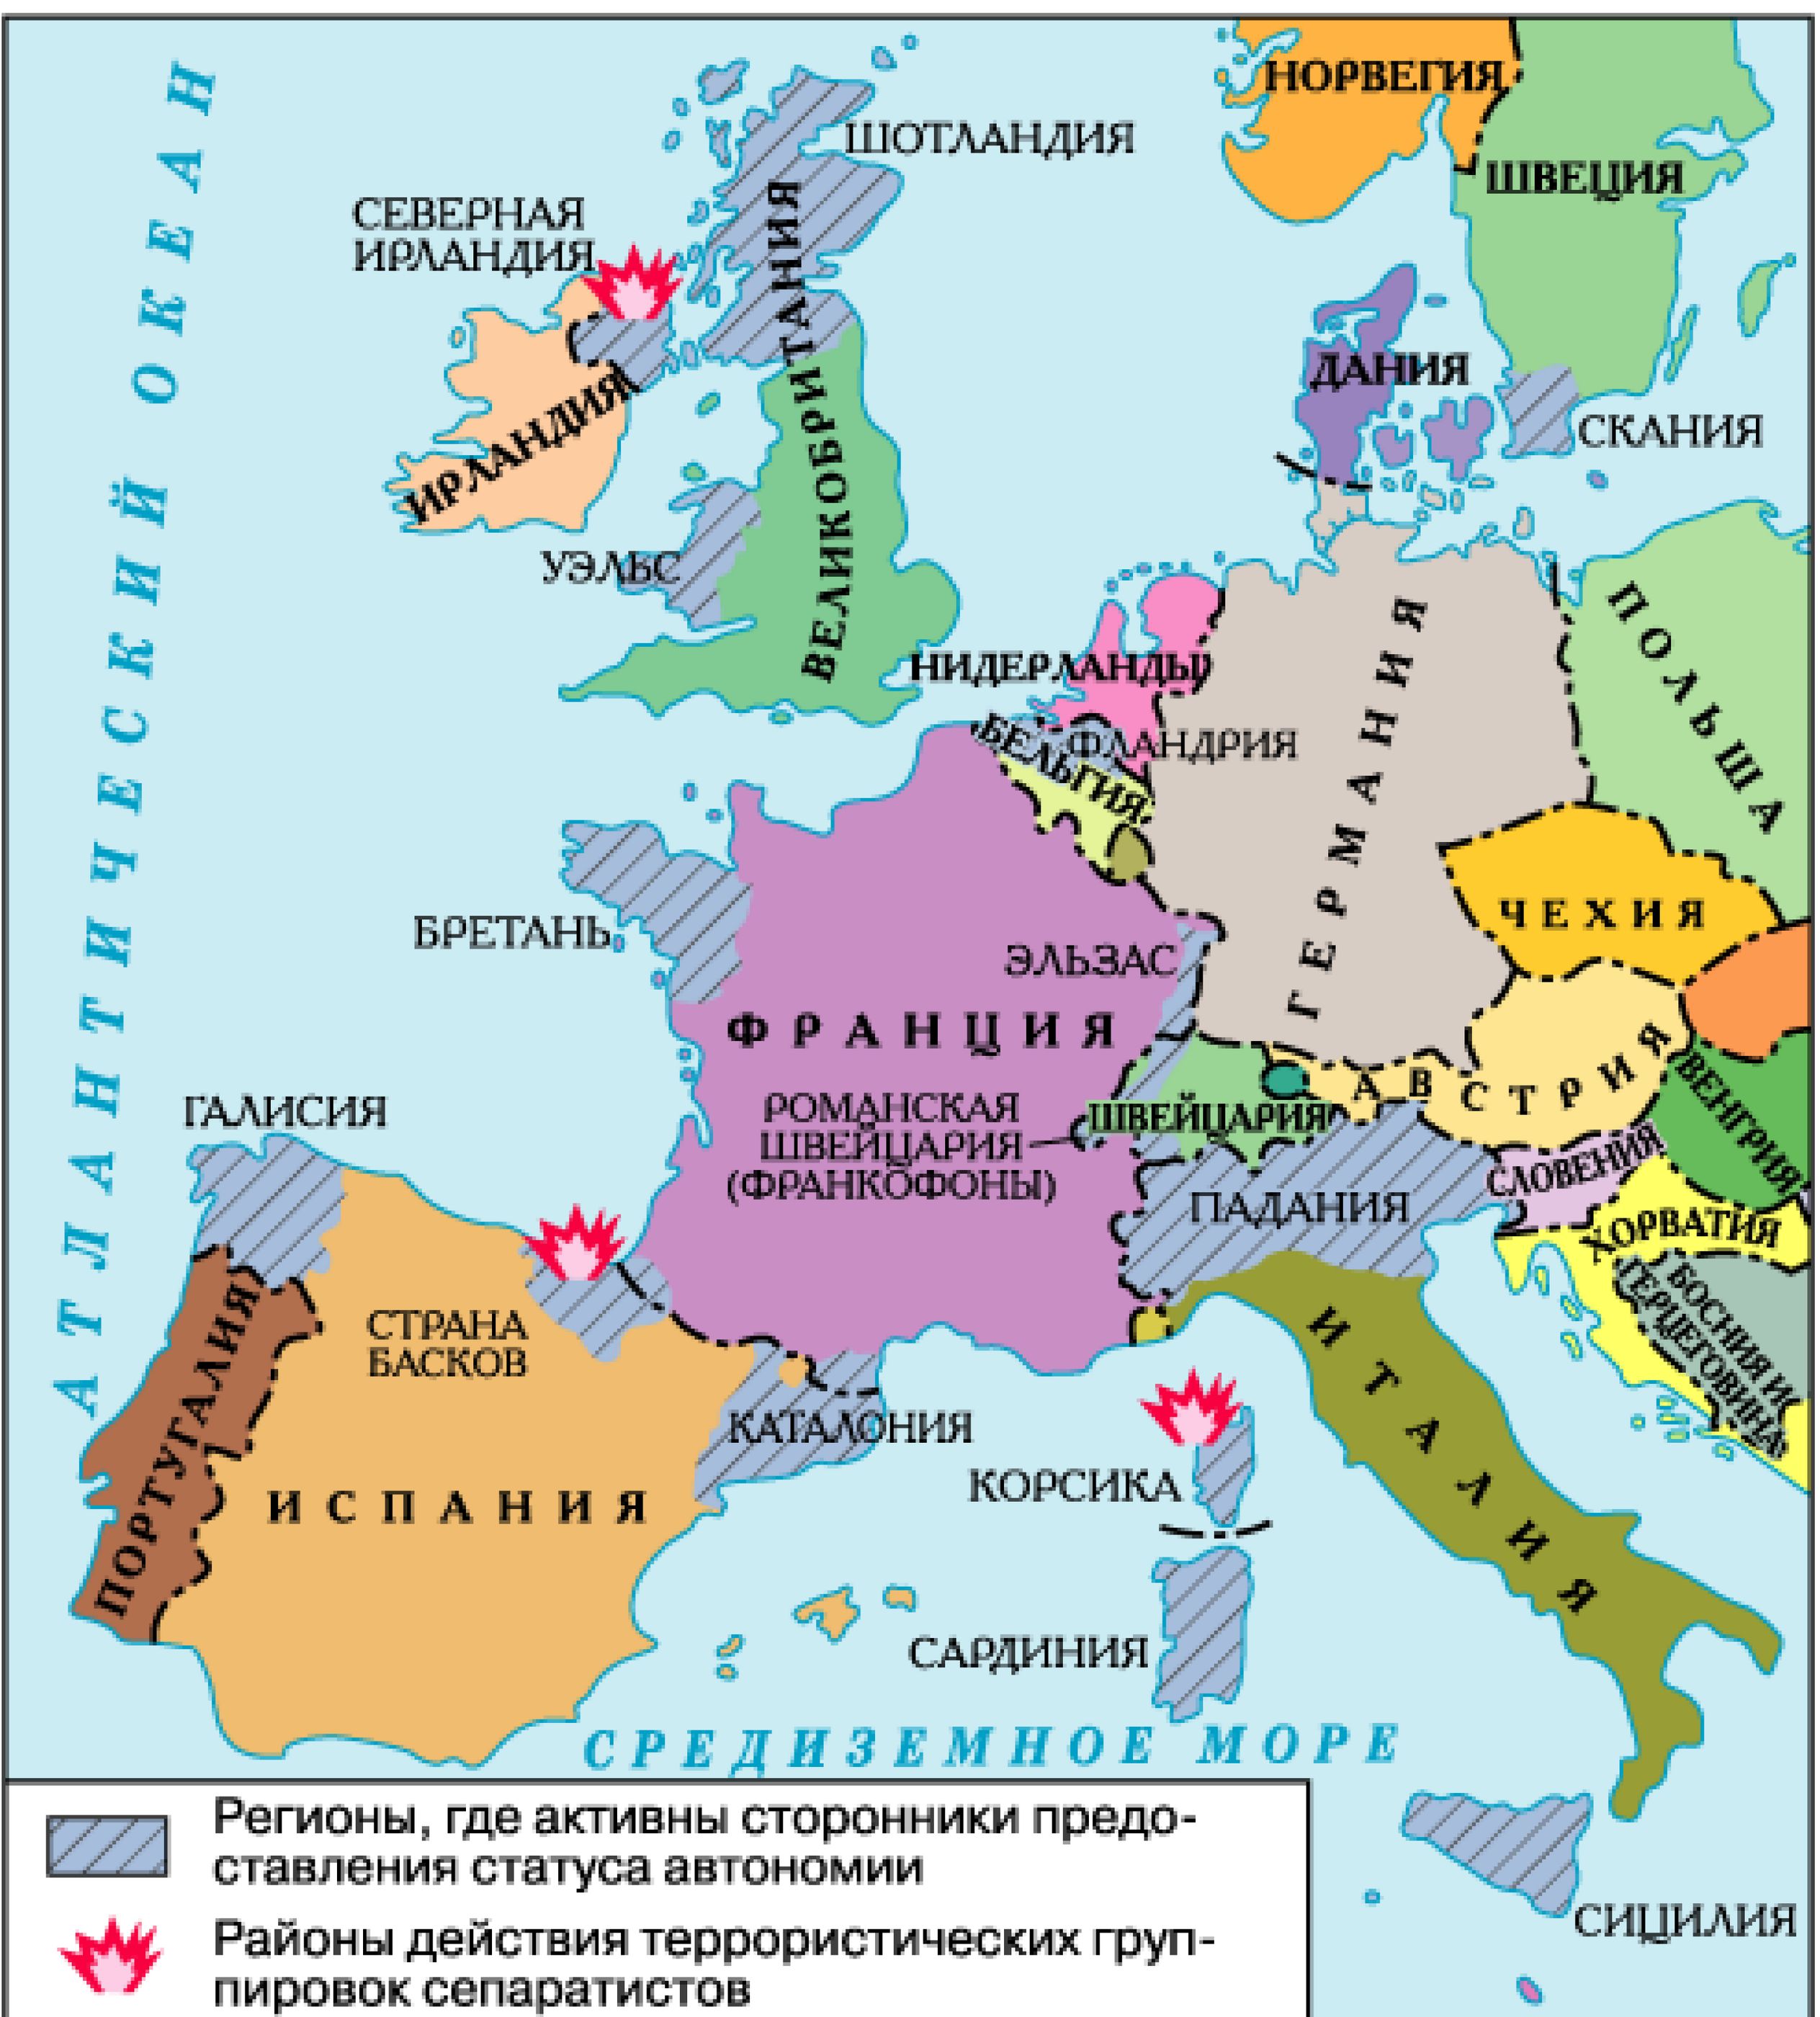 Западная европа политическая. Карта Западной Европы со странами. Политическая карта зарубежной Европы со странами. Политическая карта зарубежной Европы со странами и столицами. Западная Европа карта страны и столицы.